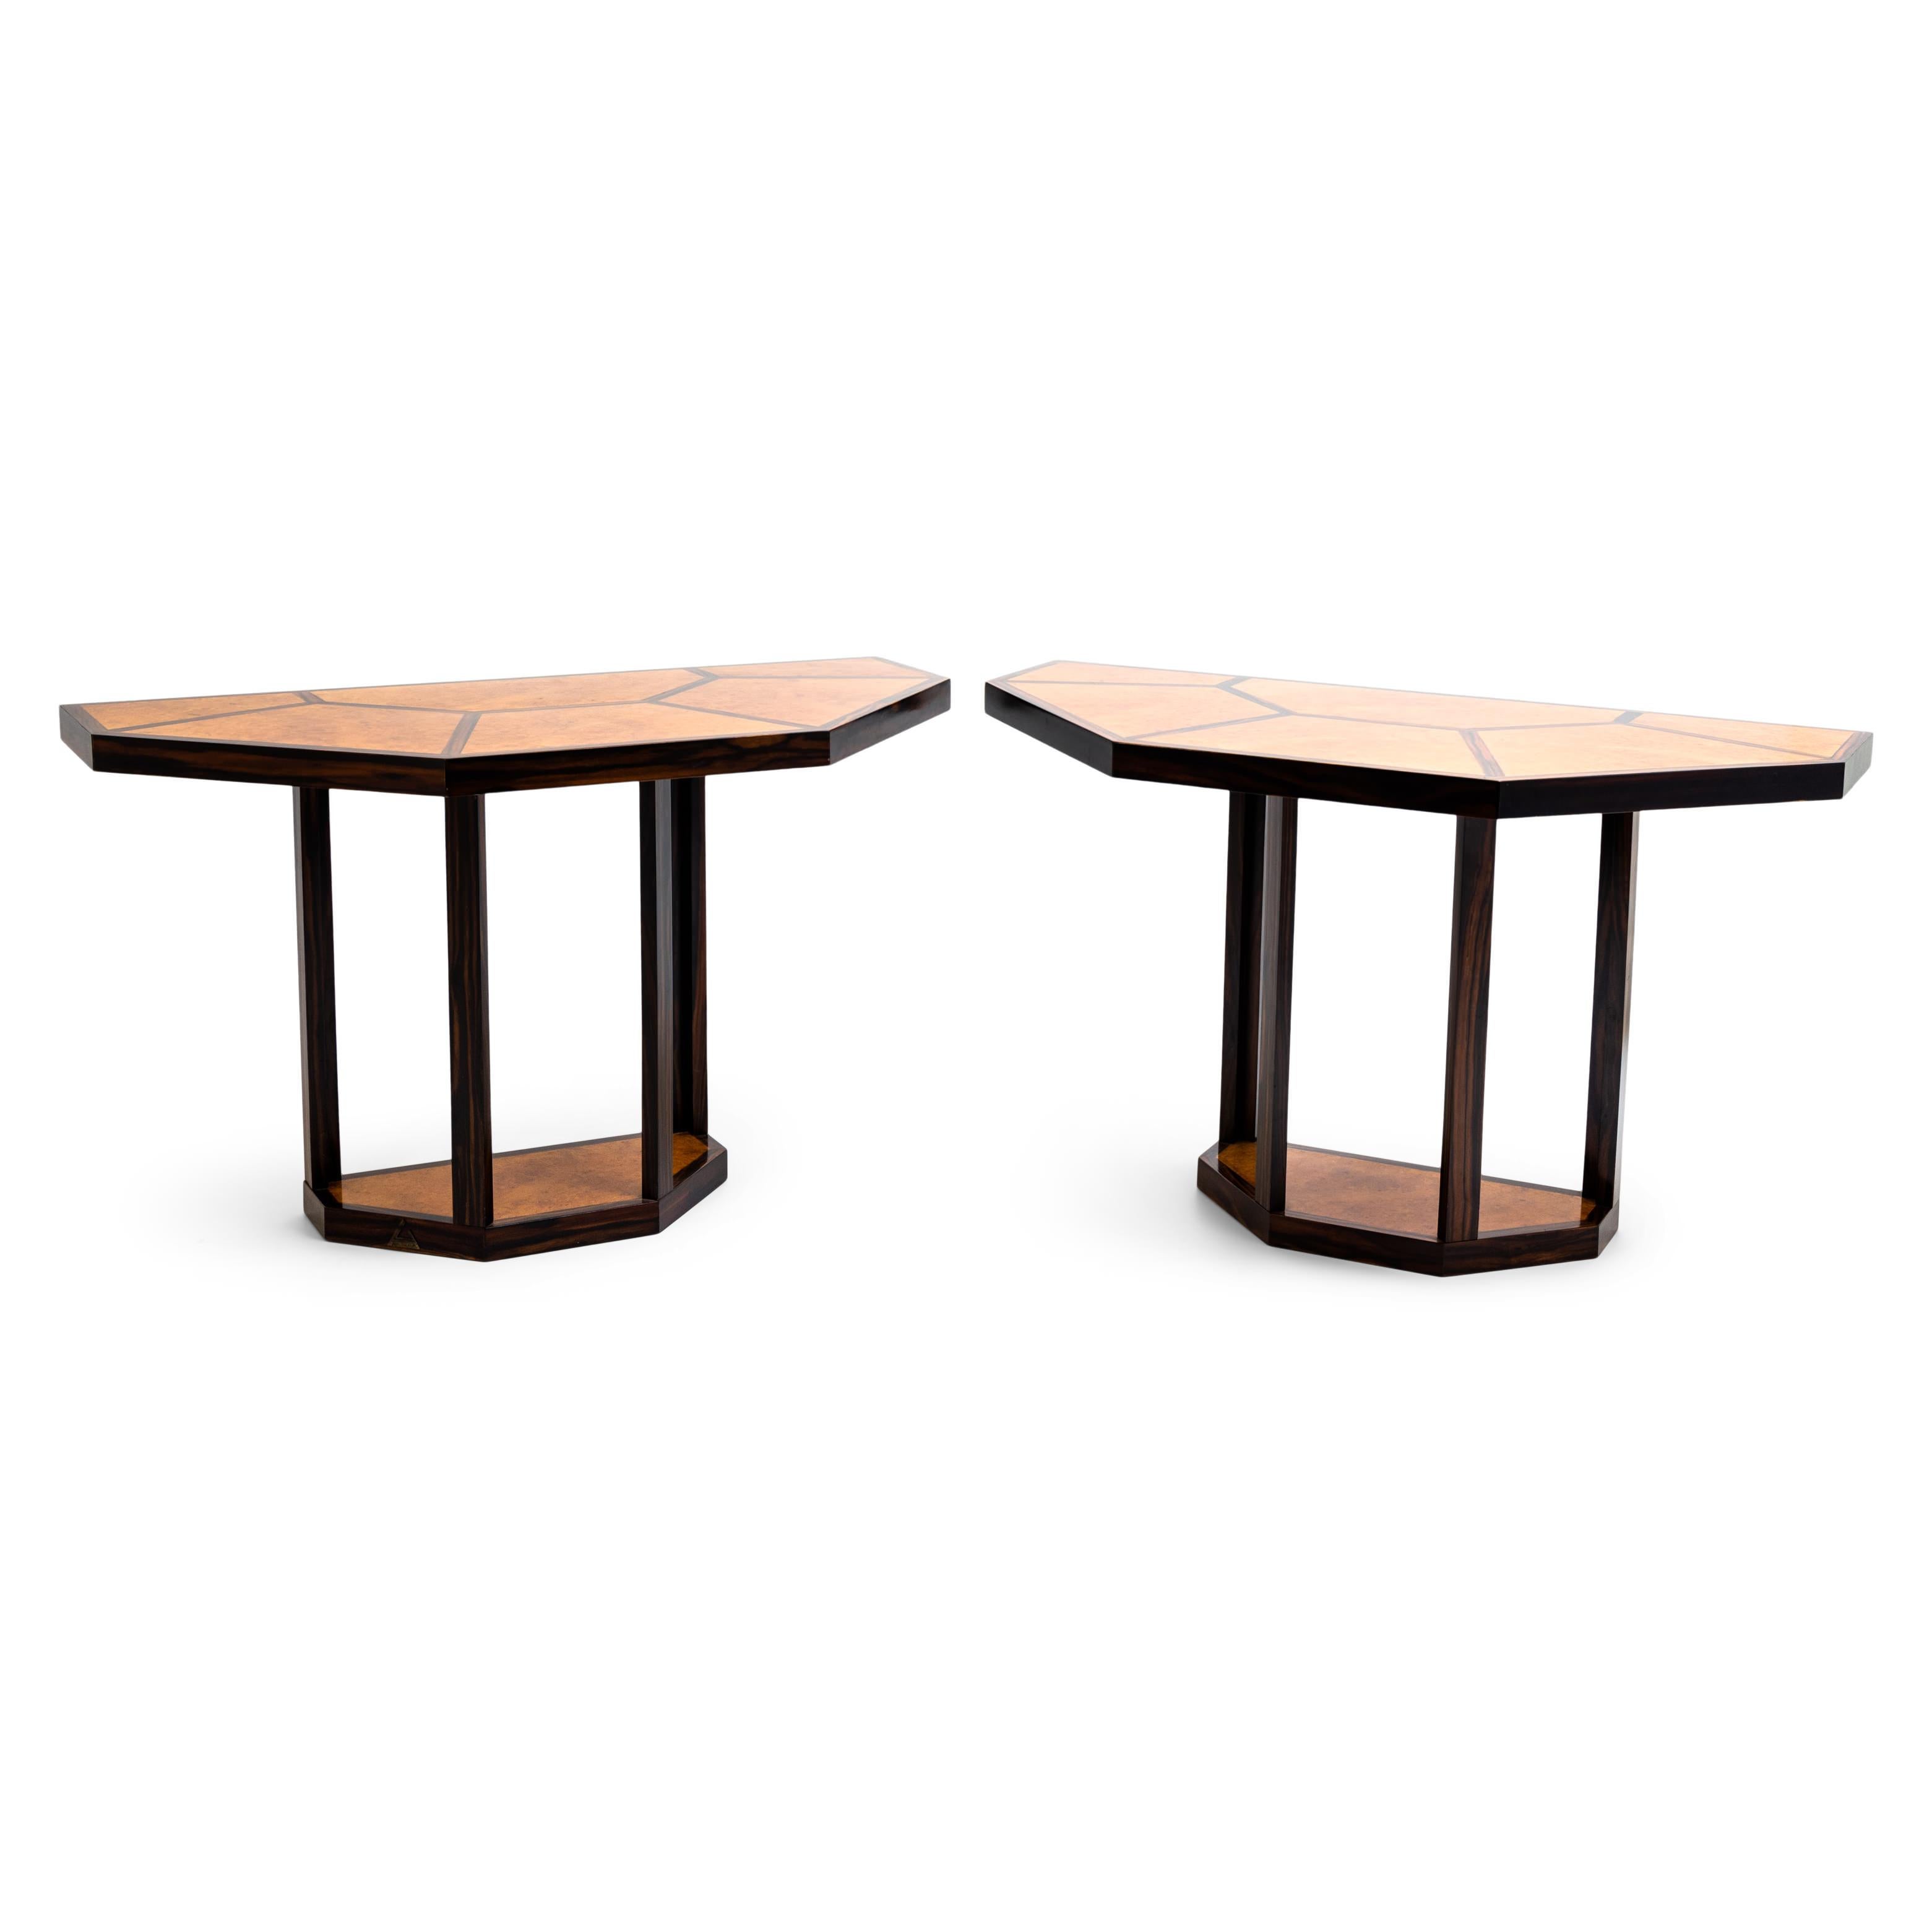 Tisch 'Puzzle' von Gabriella Crespi aus Thuja-Furnier. Der Tisch/die Tische können in verschiedenen Konfigurationen verwendet werden. Größerer Esstisch, kleinerer Esstisch oder zwei Konsolen. Von der größten bei 66¼ 